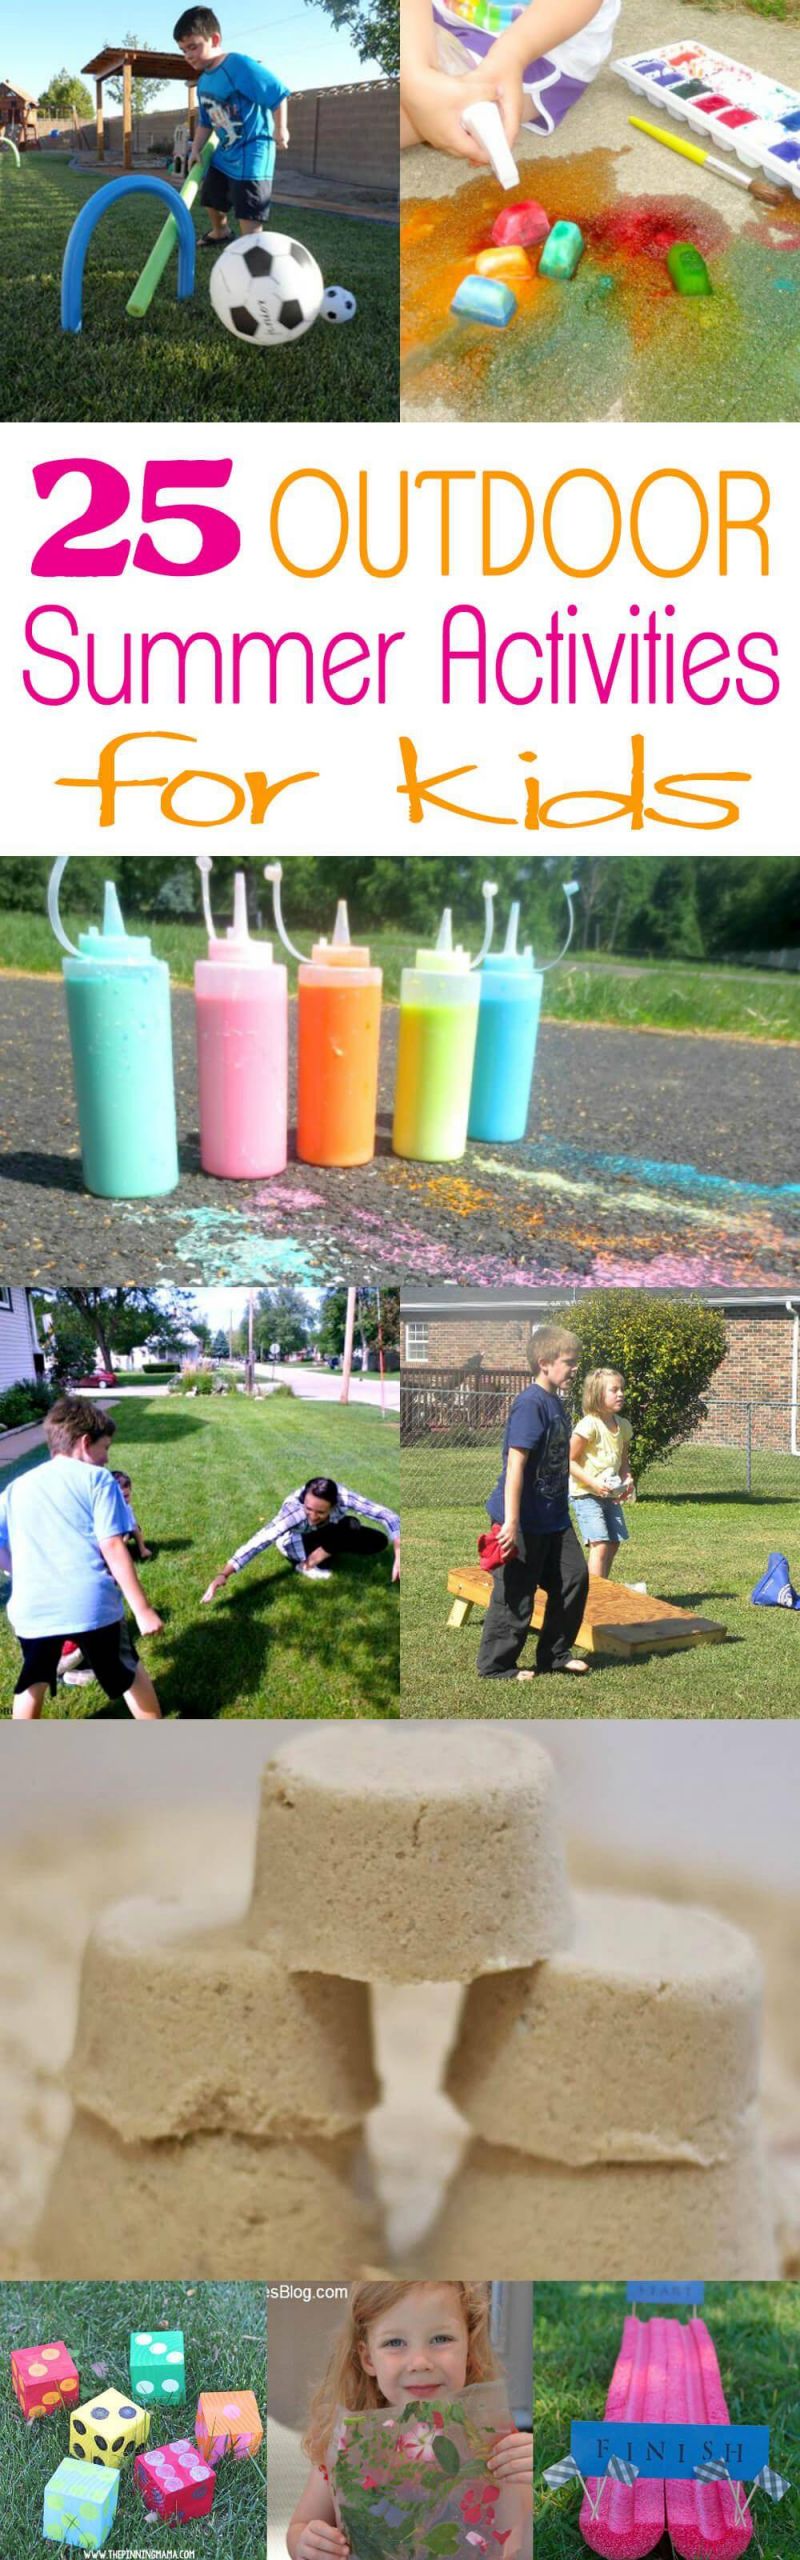 Outdoor Activities For Kids
 25 Outdoor Summer Activities for Kids